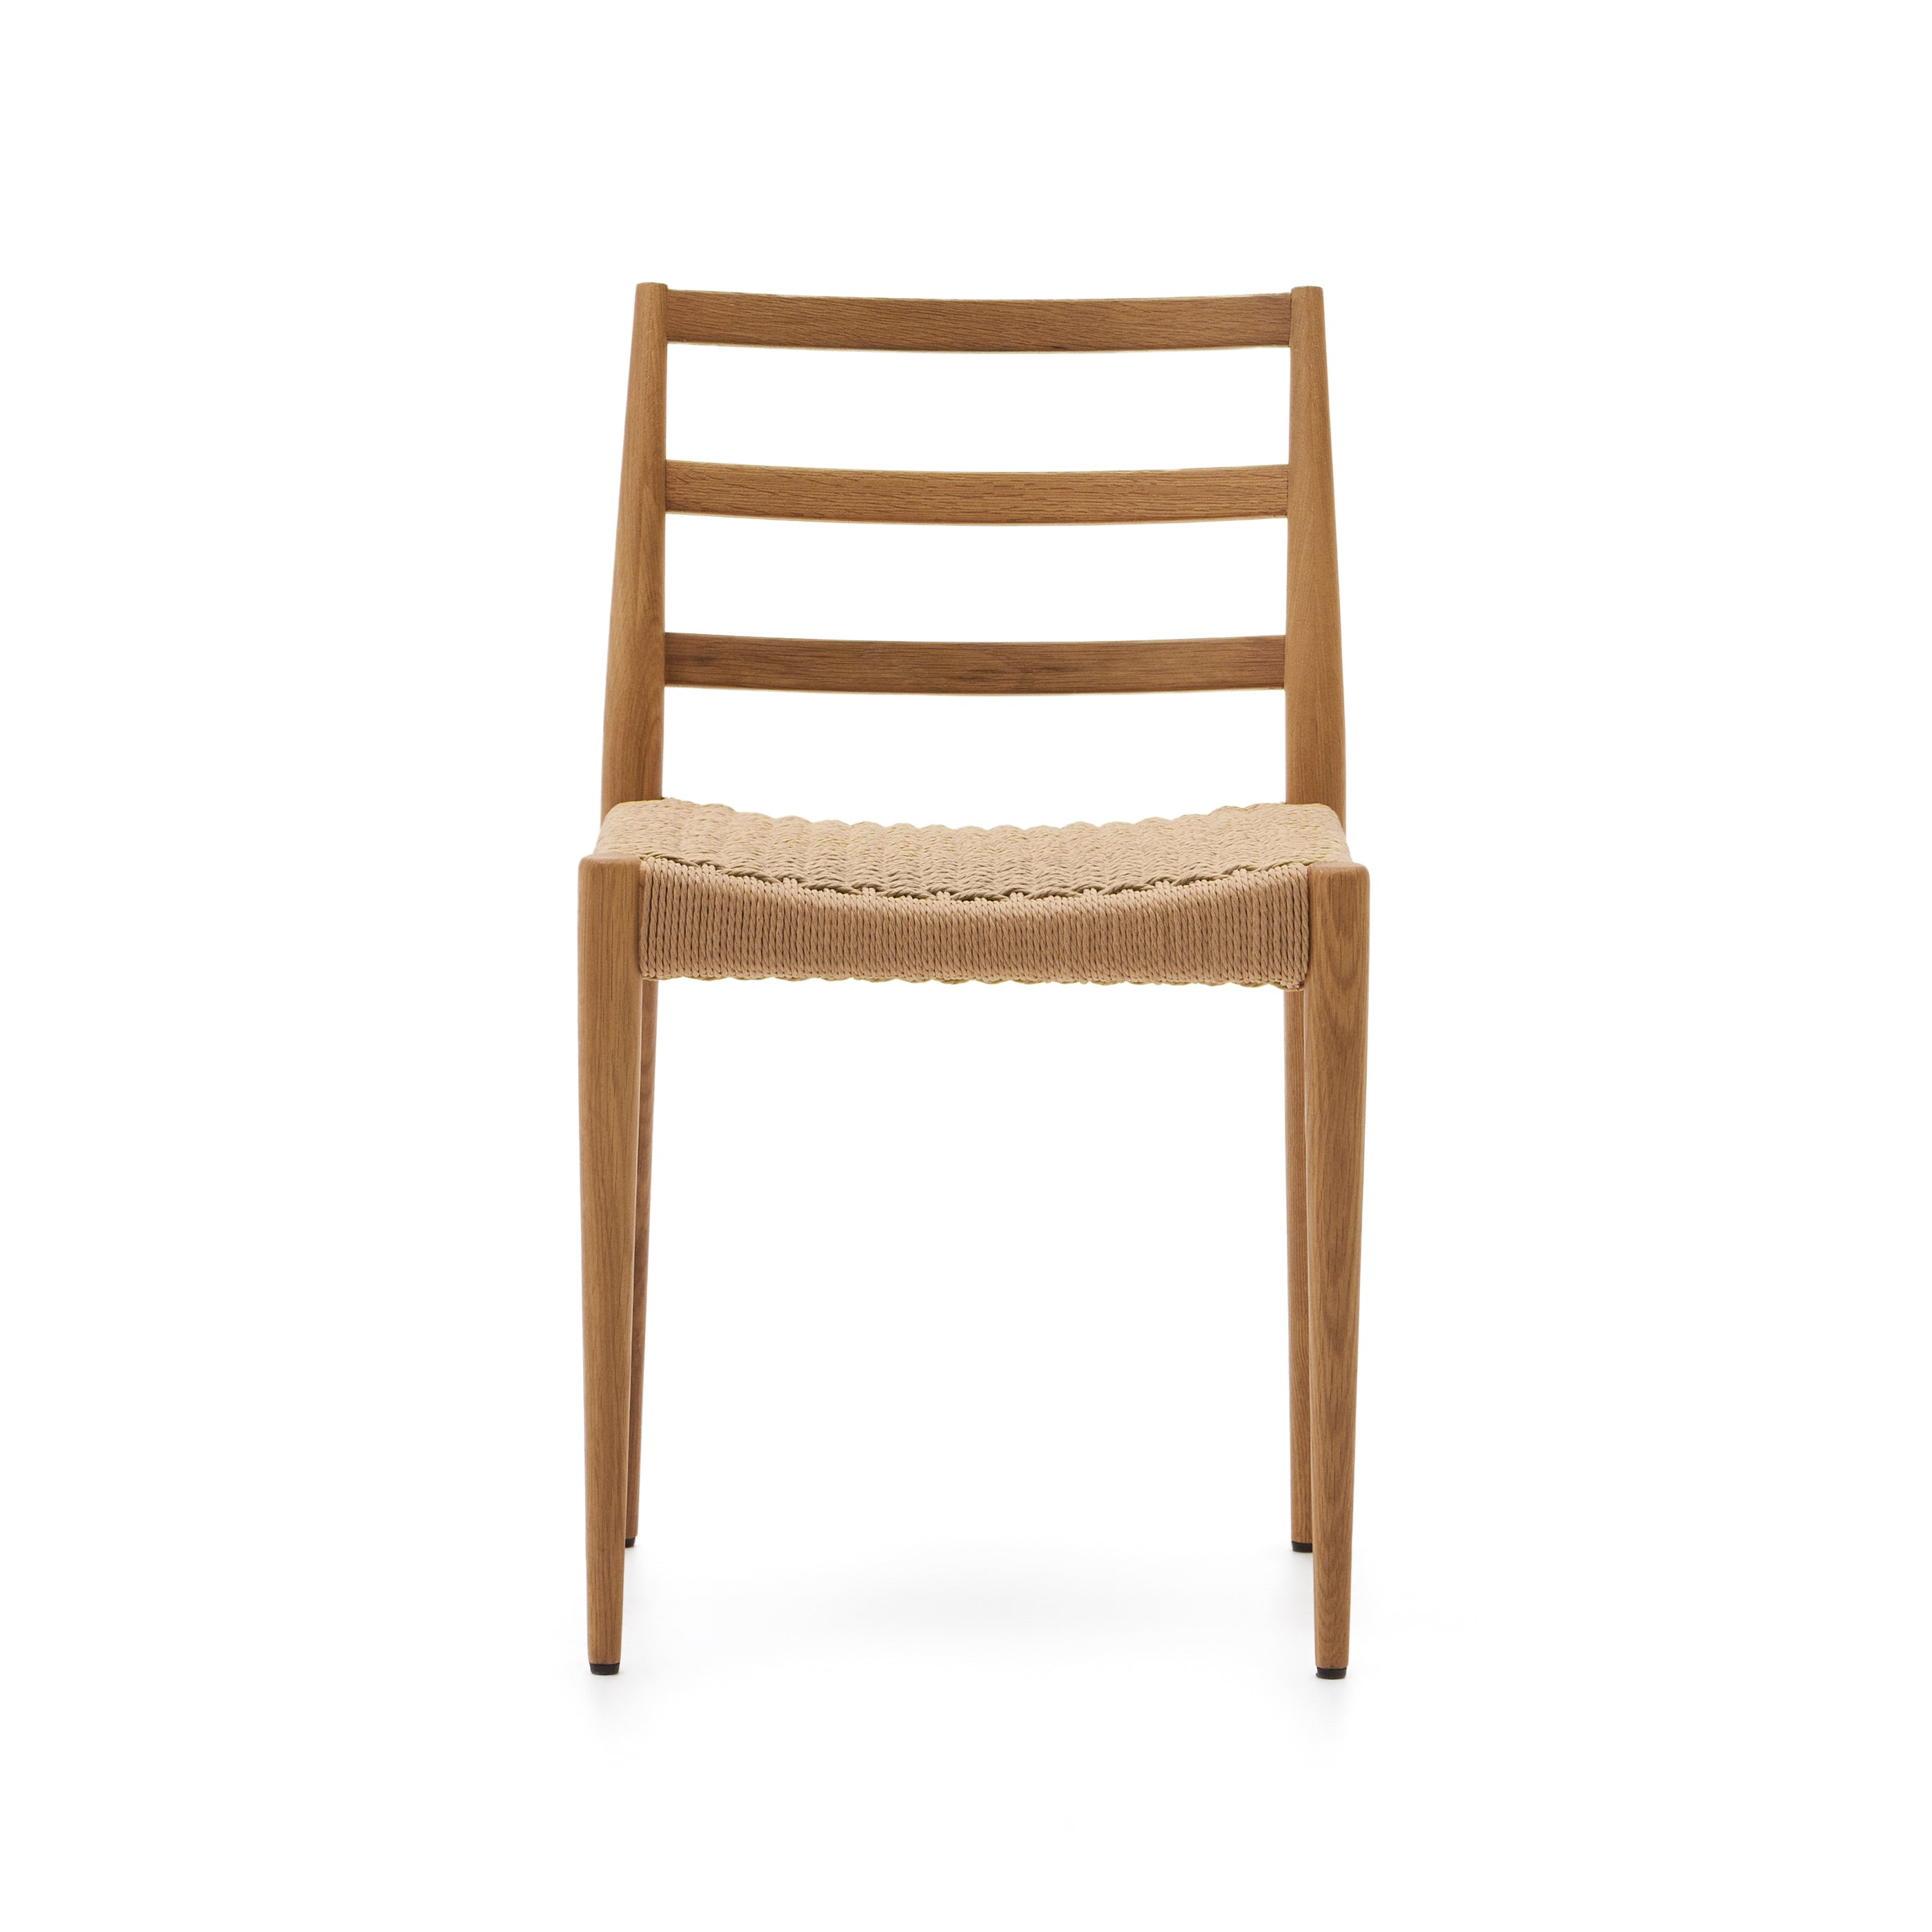 Analy szék tömör tölgyfából FSC 100%, natúr kivitelben, kötél ülőfelülettel.